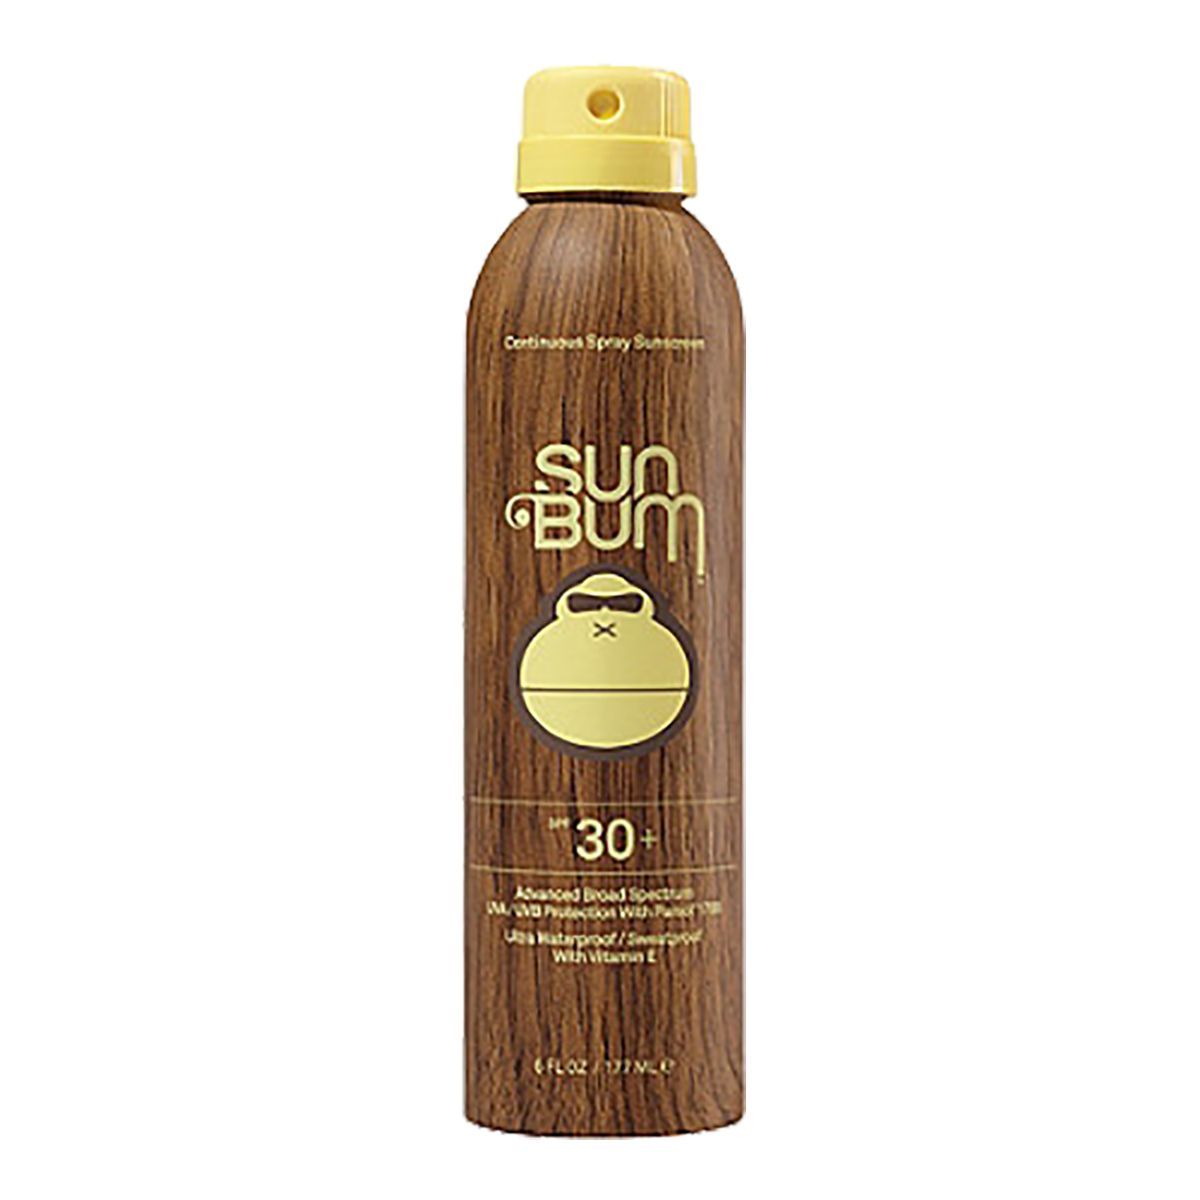 Sun Bum SPF 30 Spray